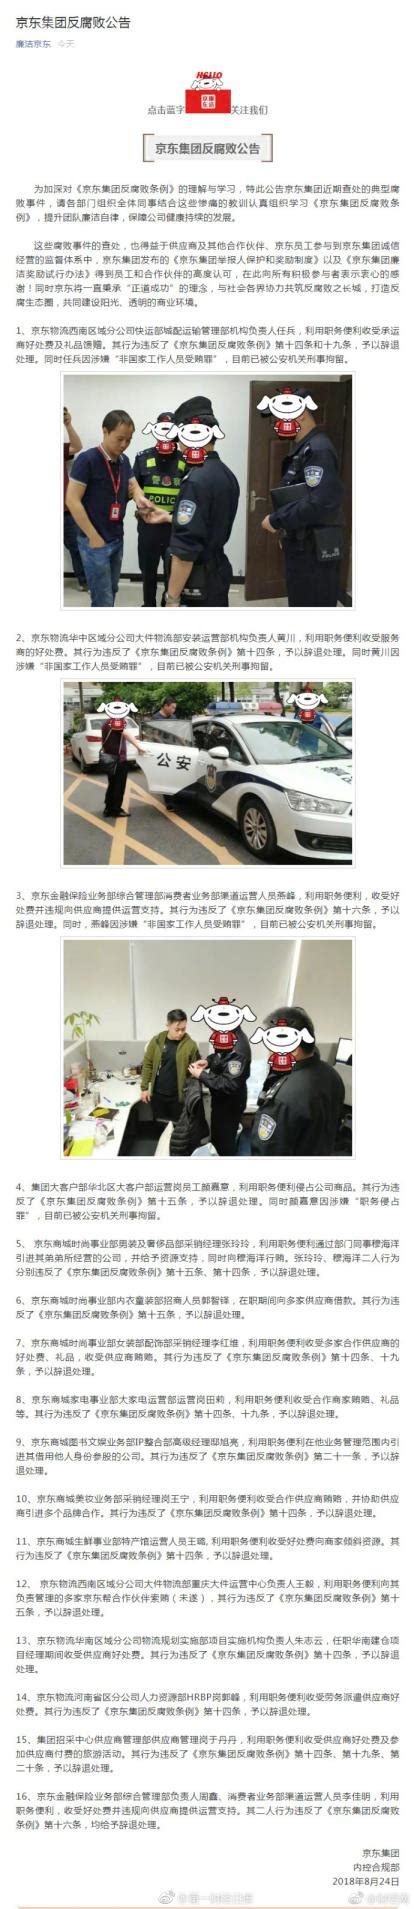 京东集团多名员工因涉嫌受贿罪被公安机关刑事拘留